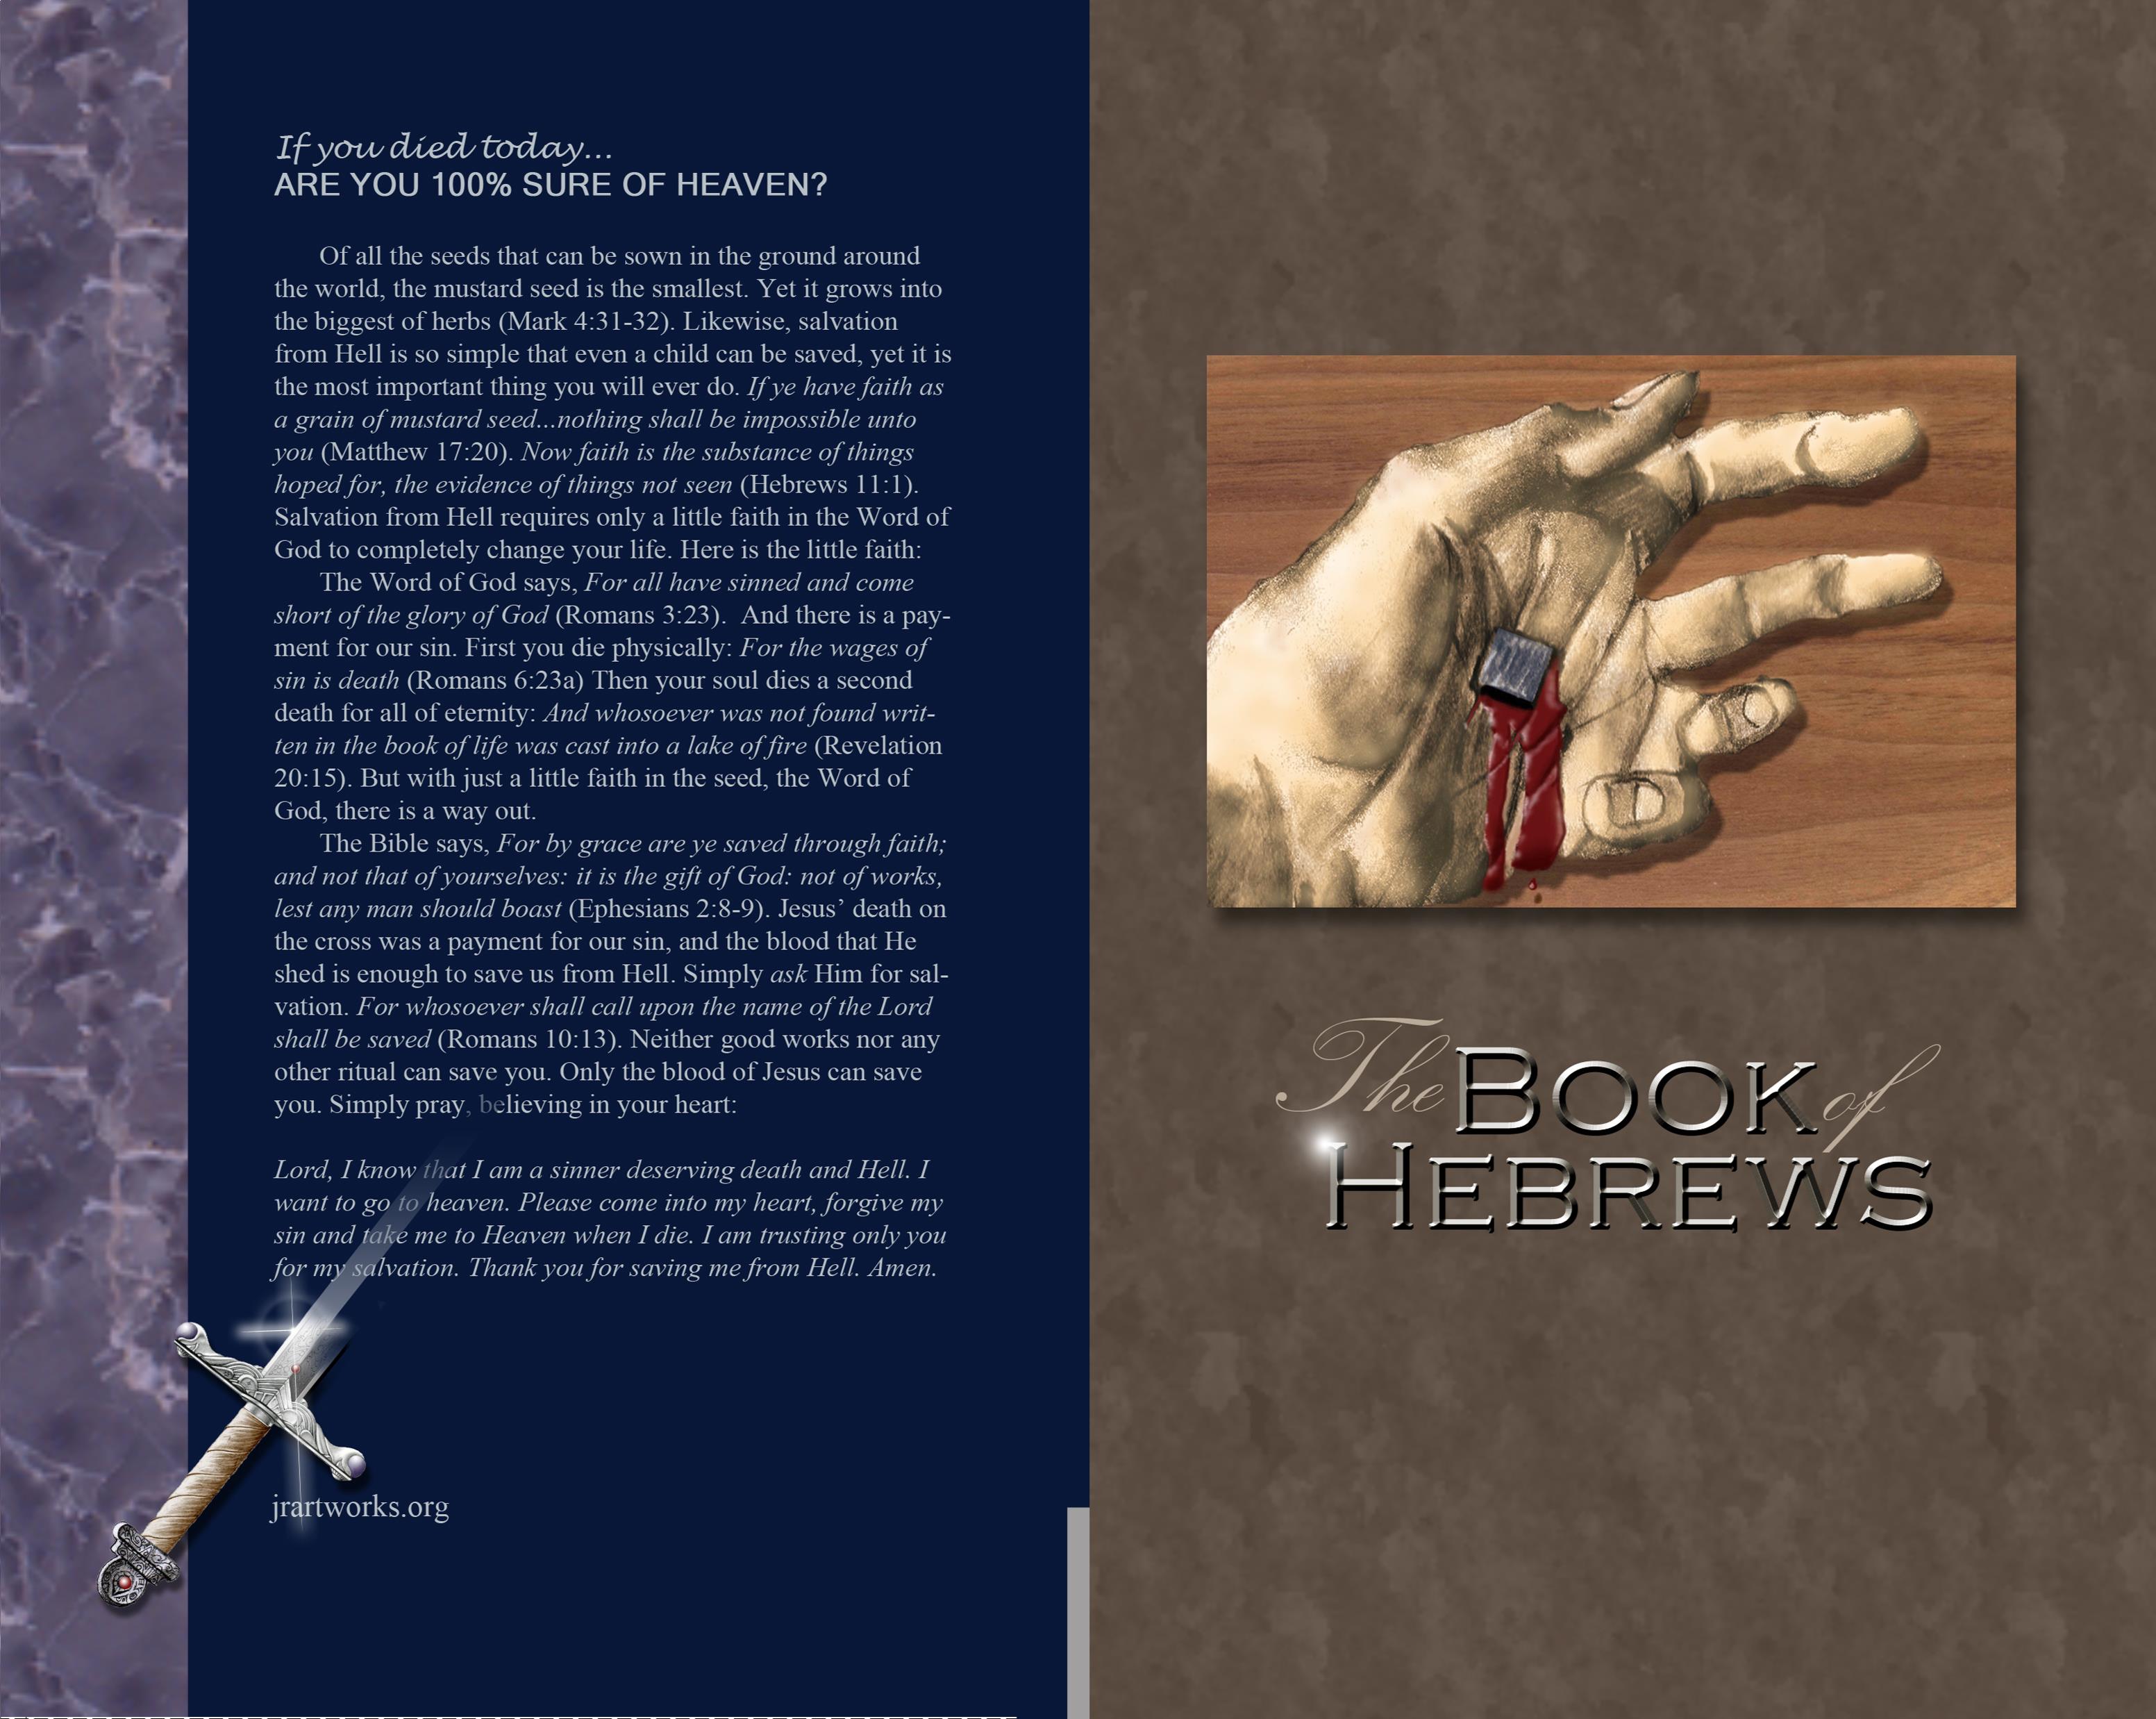 The Book of Hebrews - KJV cover image